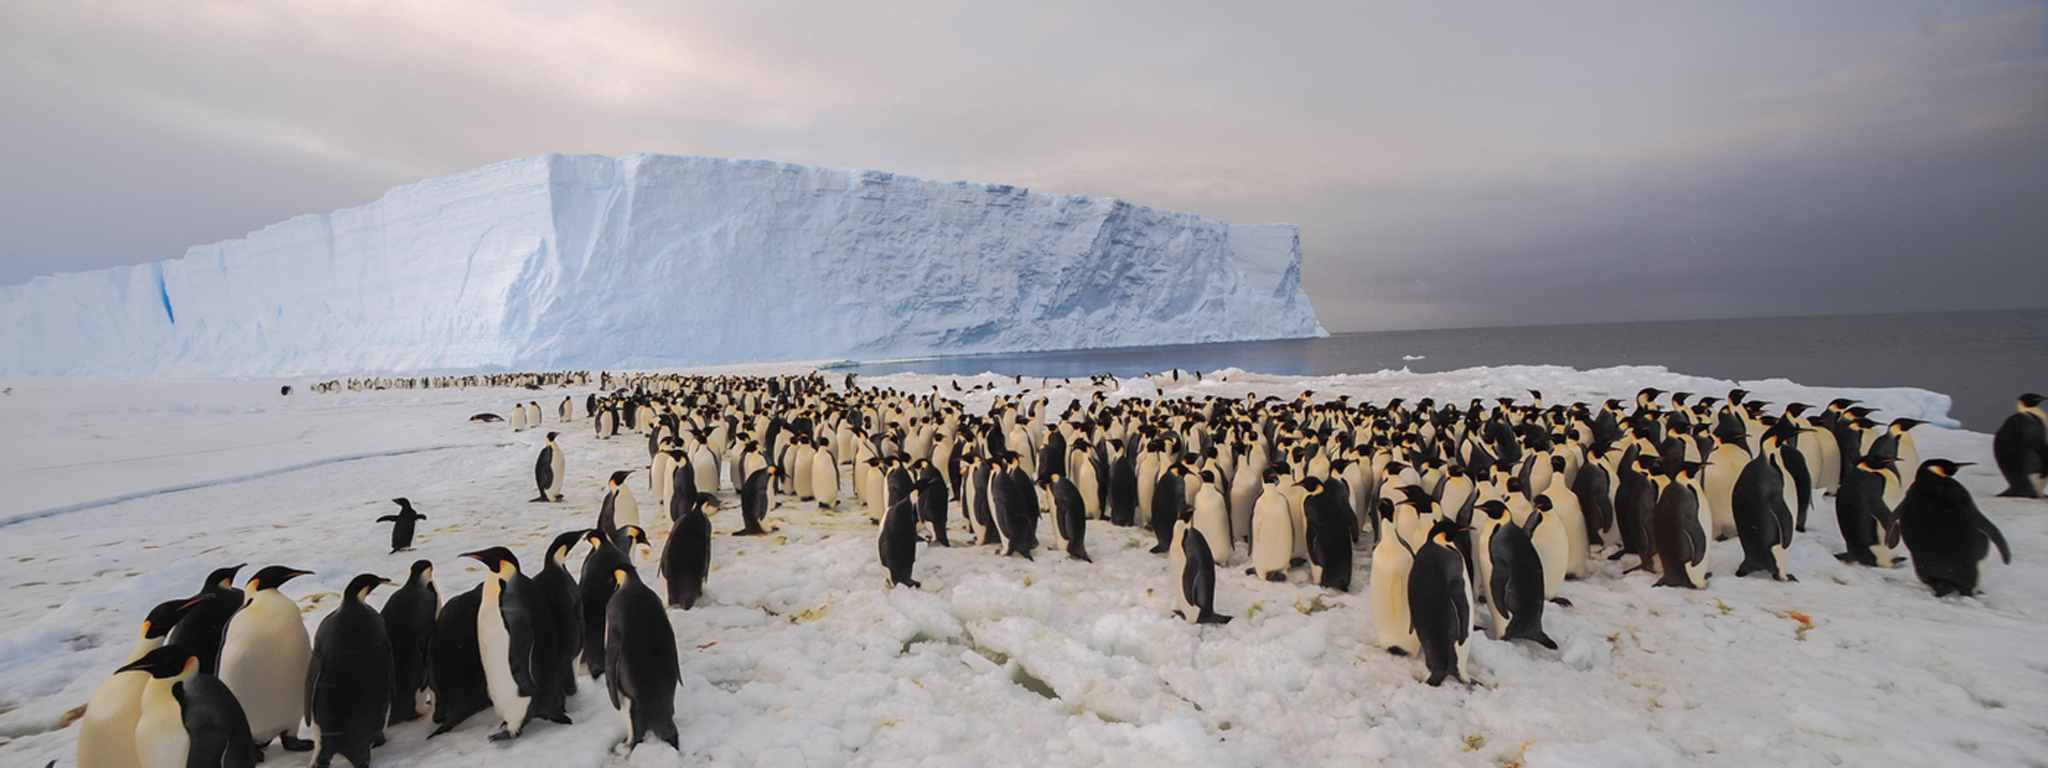 một đàn chim cánh cụt trên biển băng